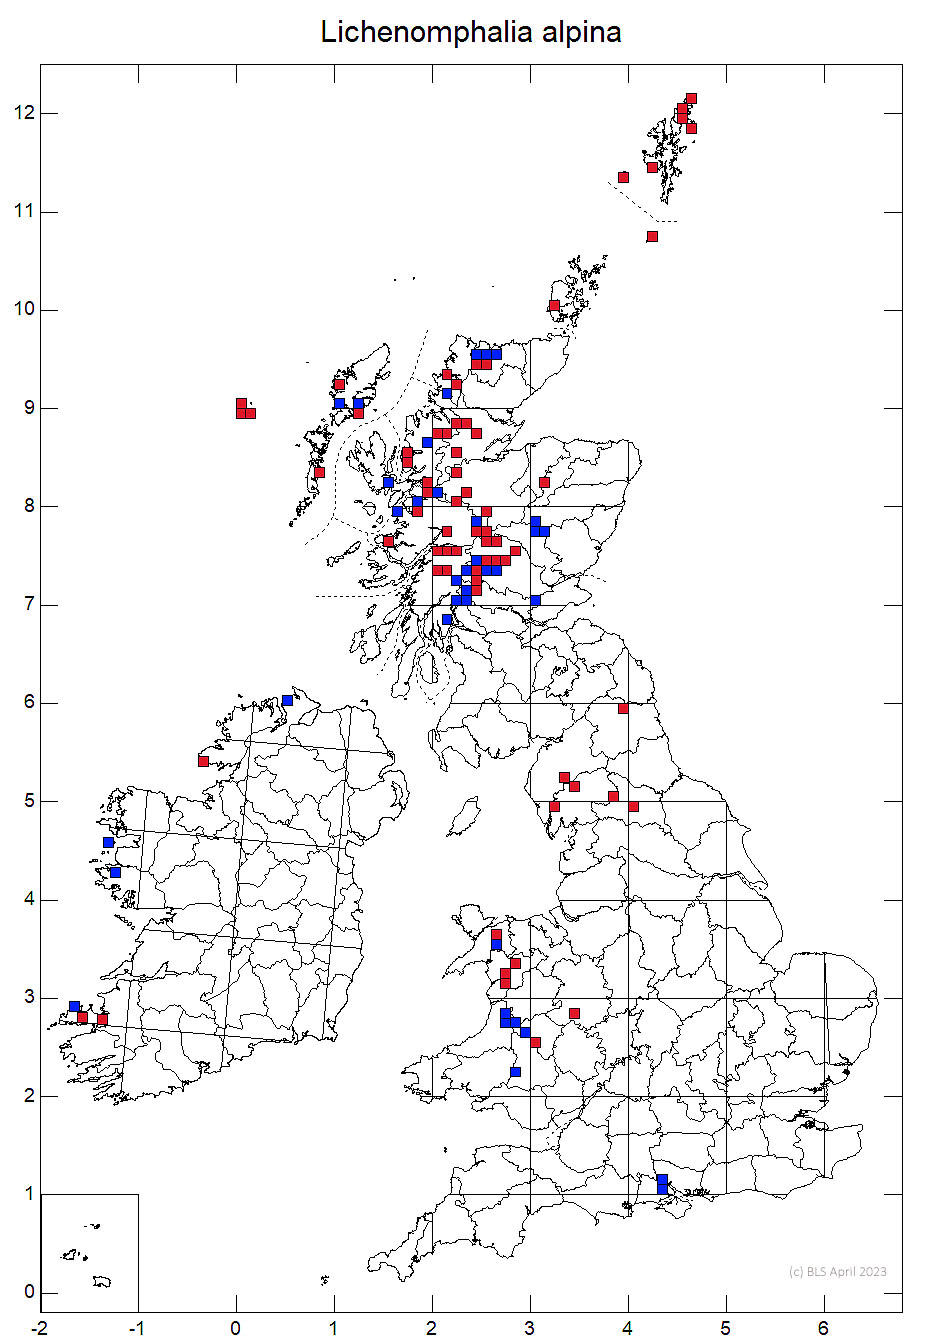 Lichenomphalia alpina 10km sq distribution map